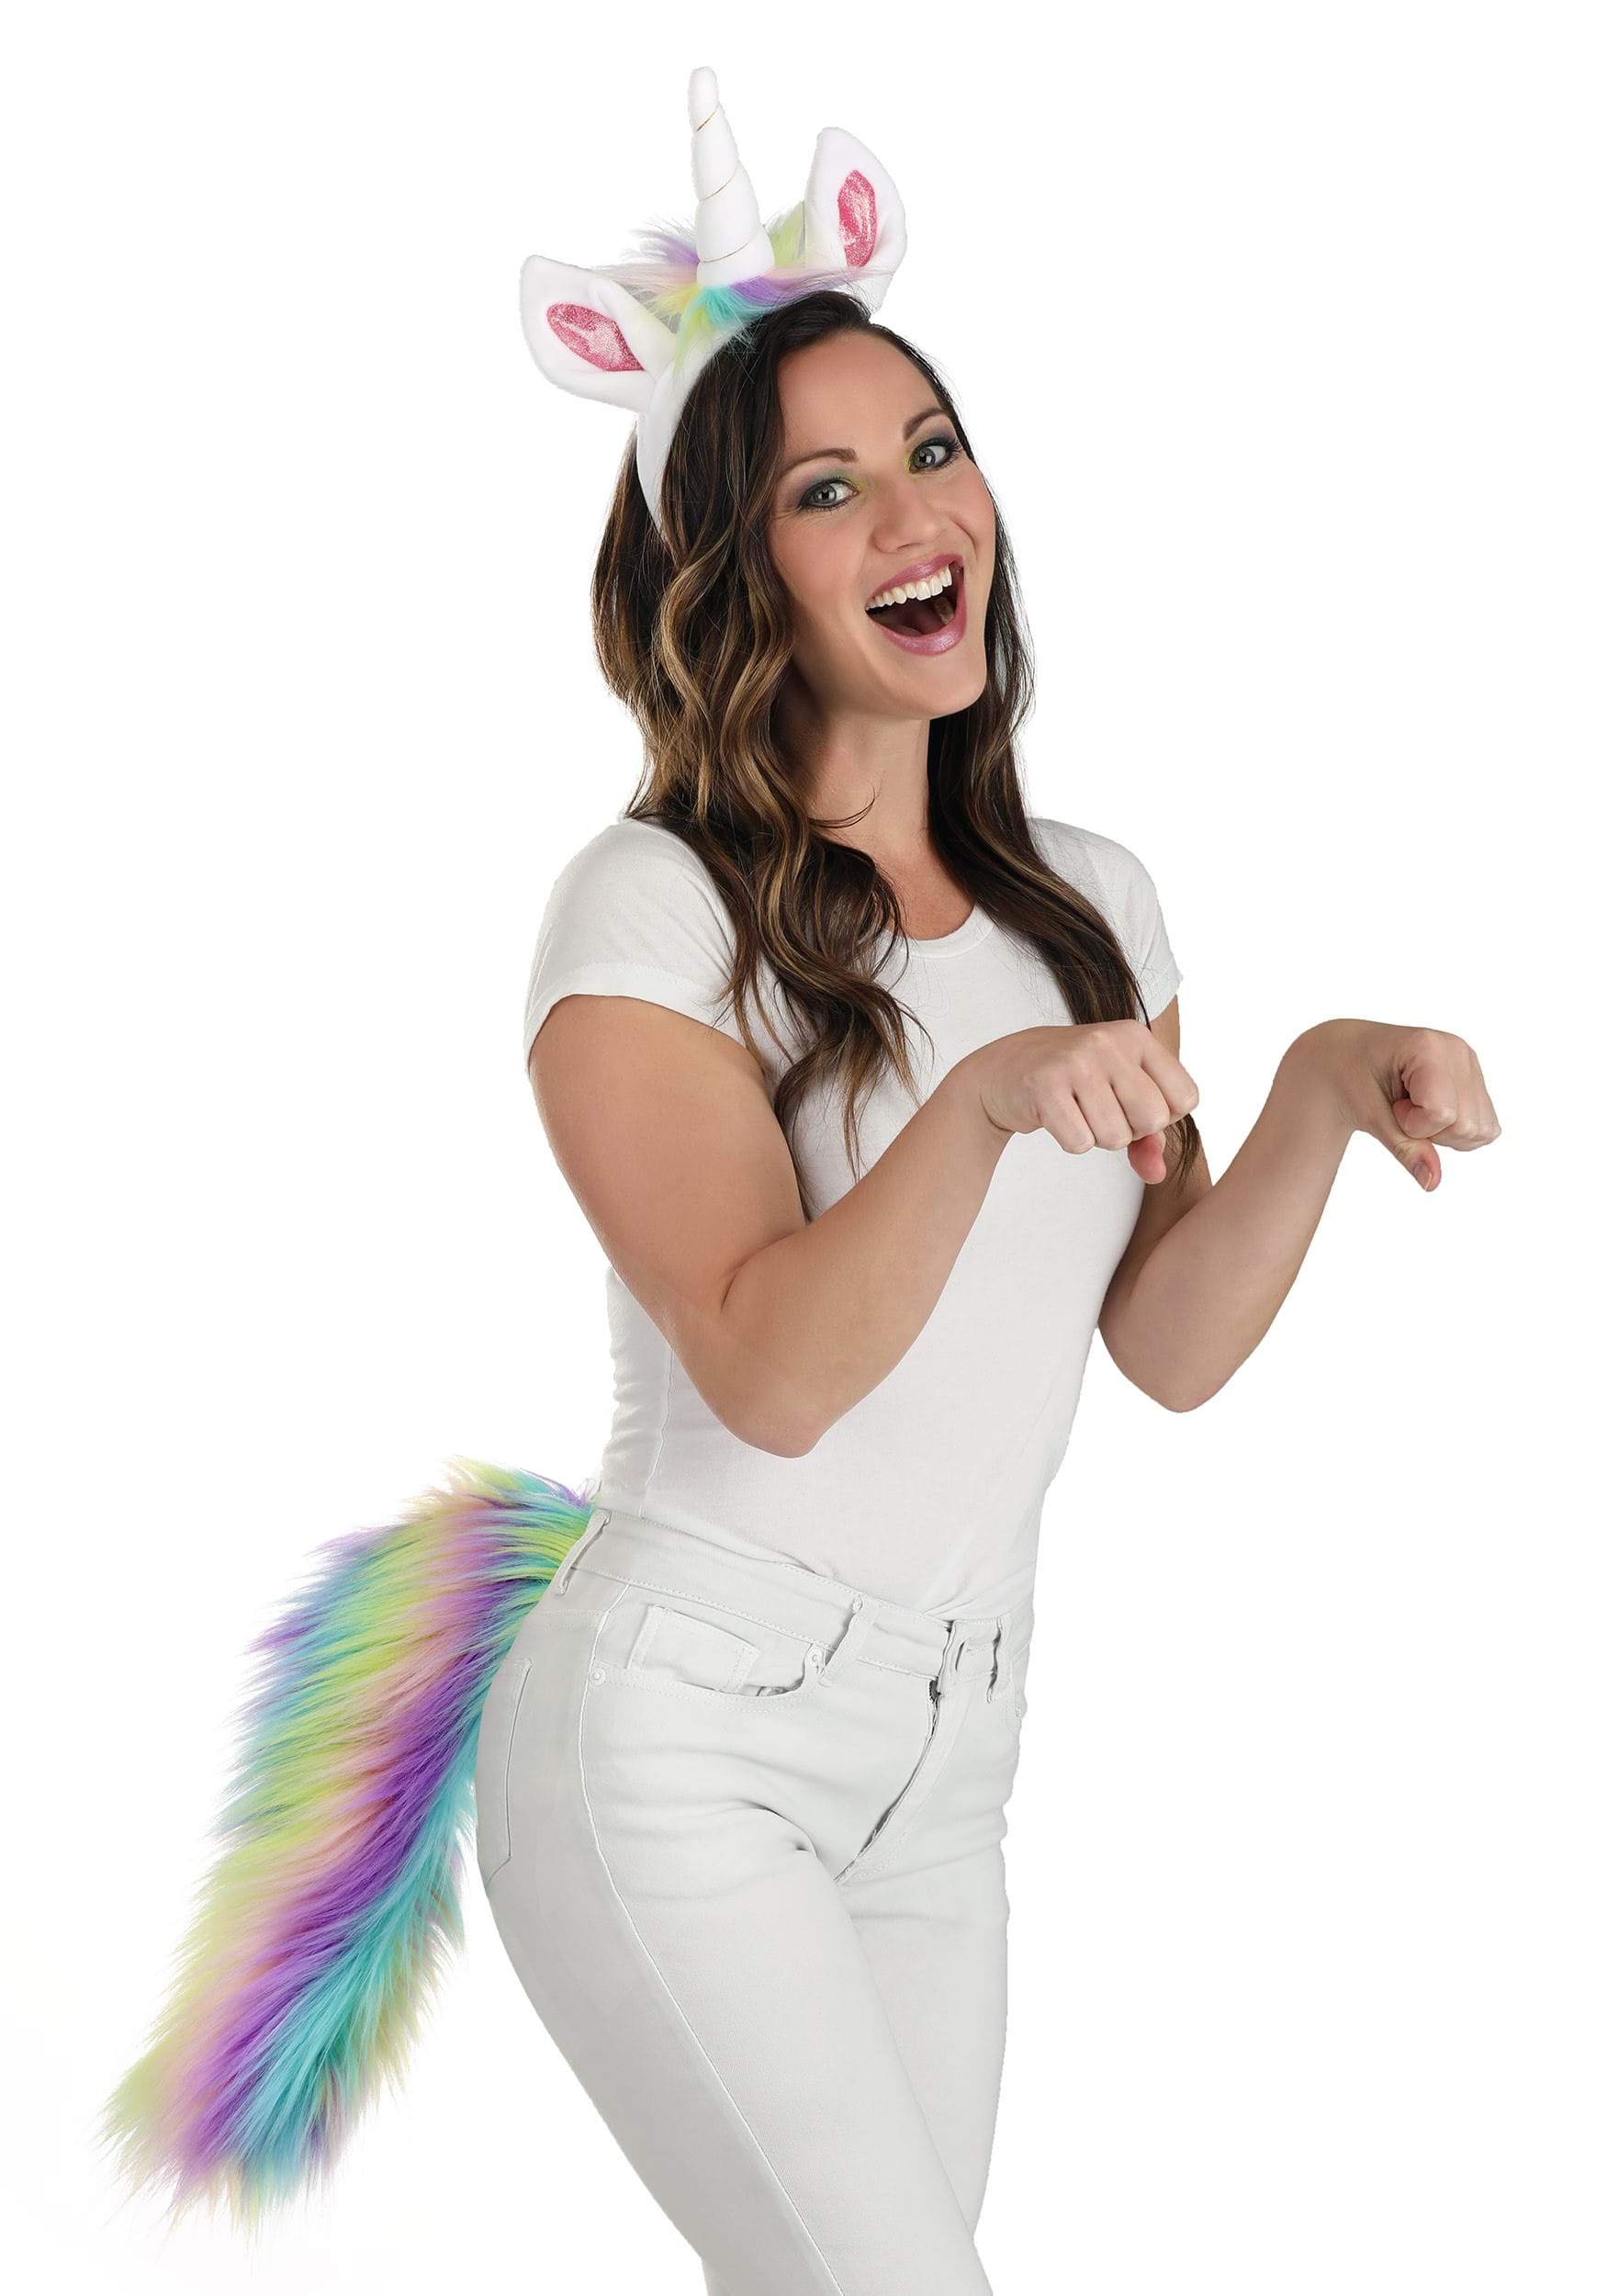 unicorn costume women